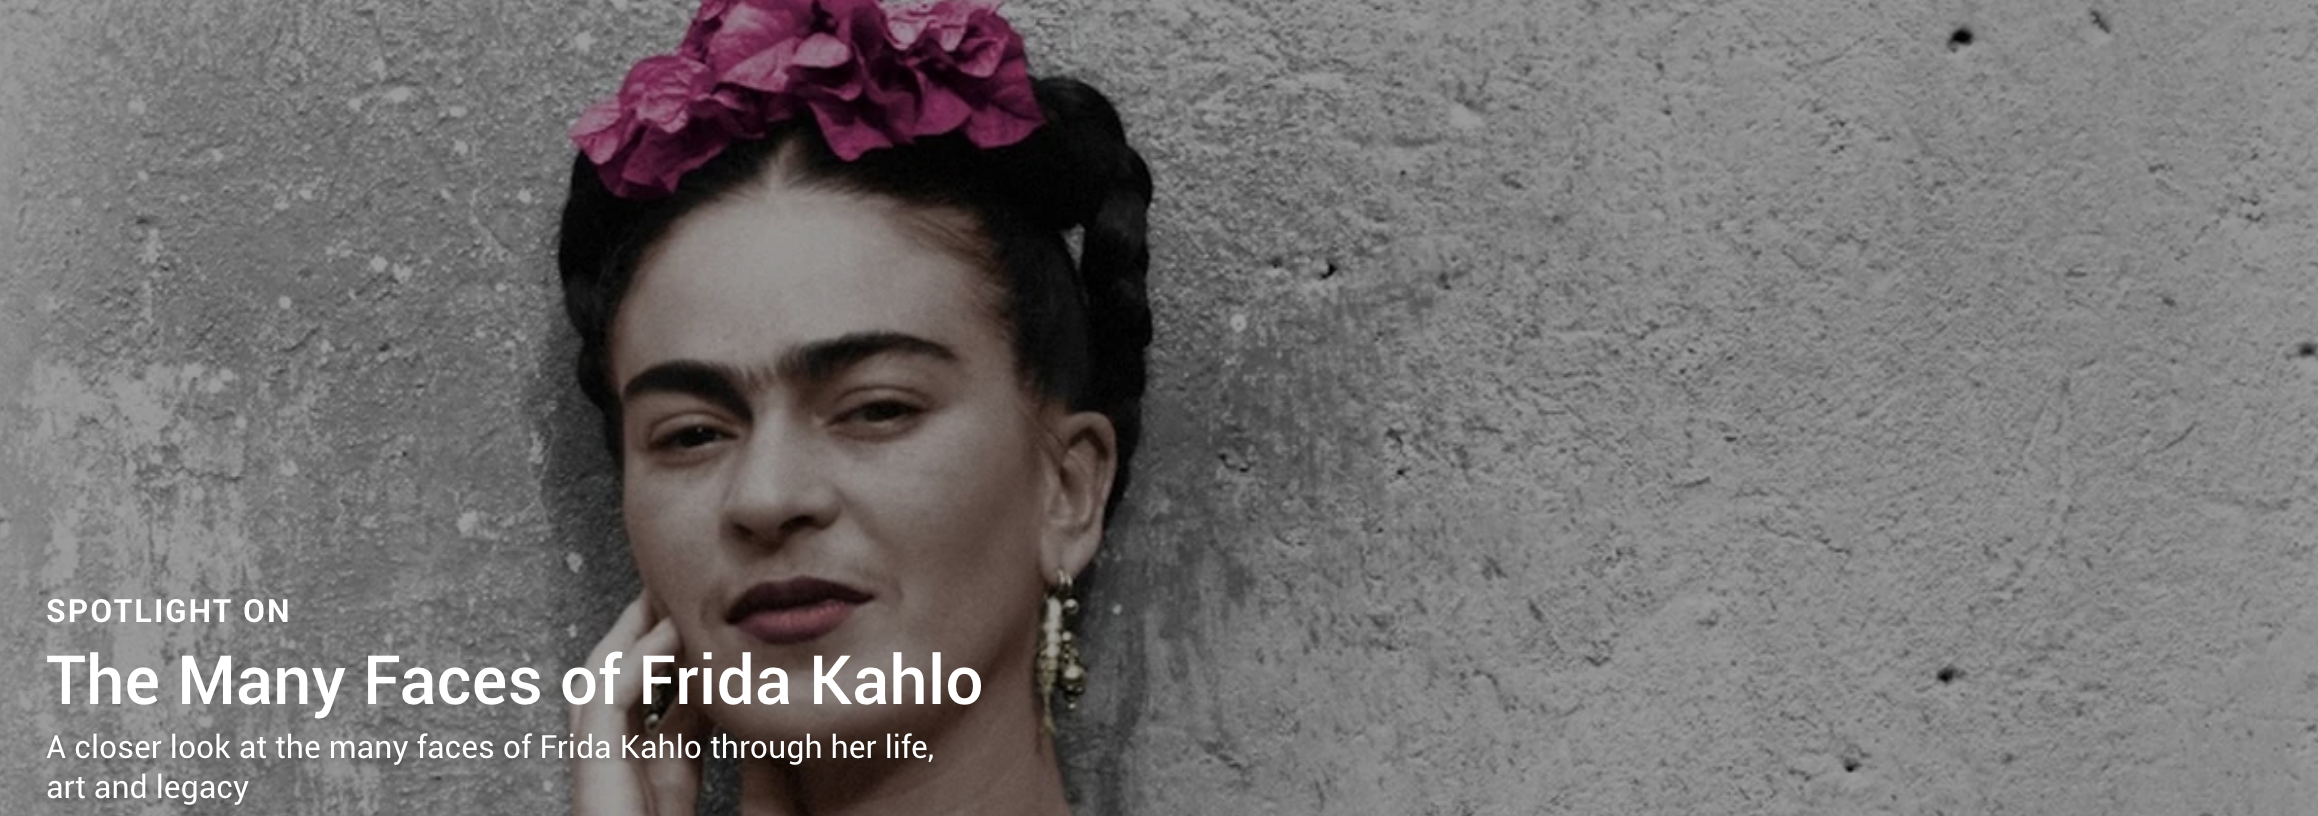 Portada de 'Caras de Frida Kahlo'. Imagen Google Arts